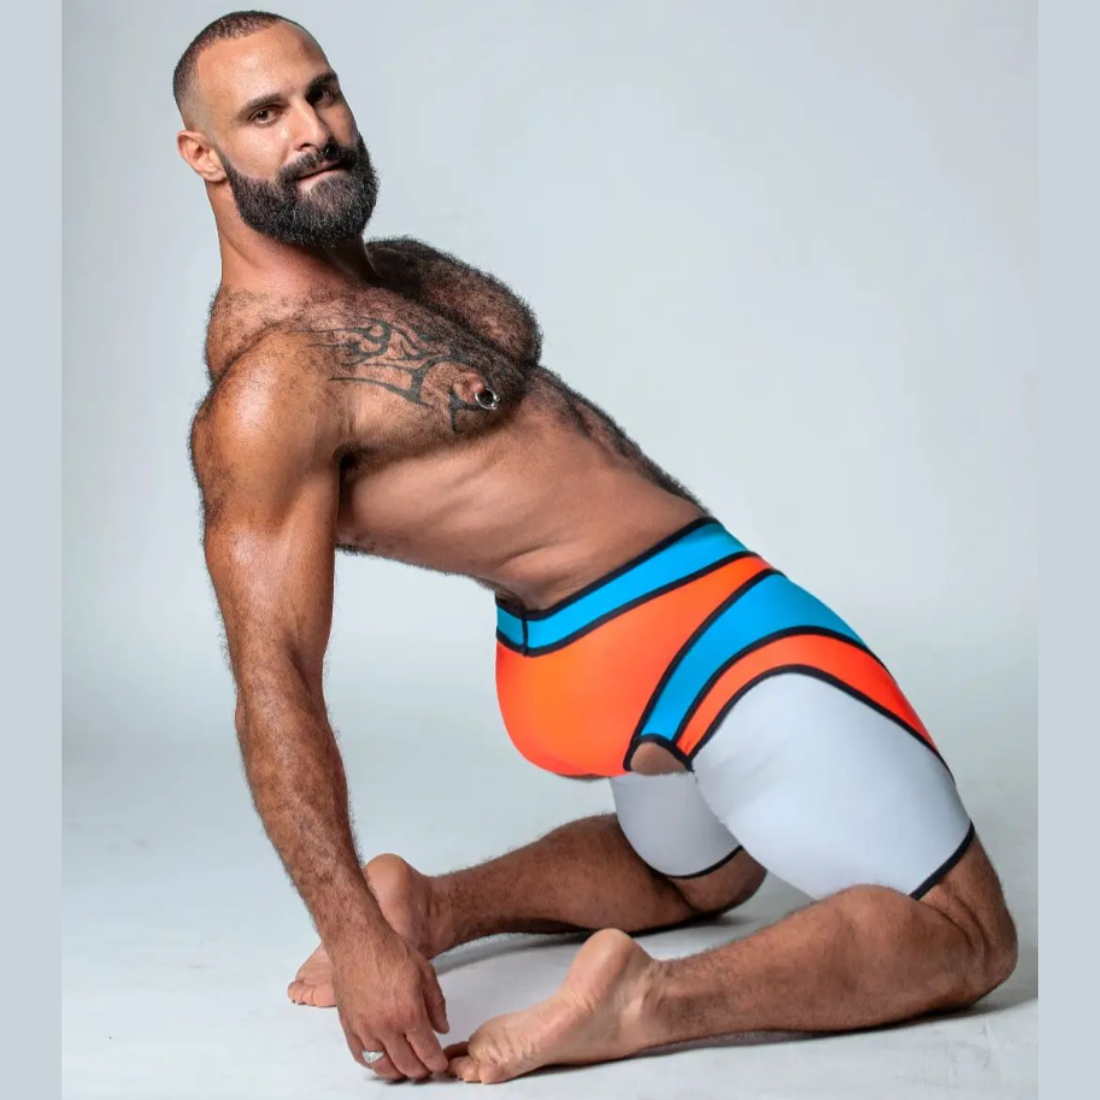 Sexy designer short met v-vormige tailleband en oranje, blauwe, zwarte en witte kleuren, ontworpen door het Italiaanse modehuis Sparta’s Harness en te koop bij Flavourez.